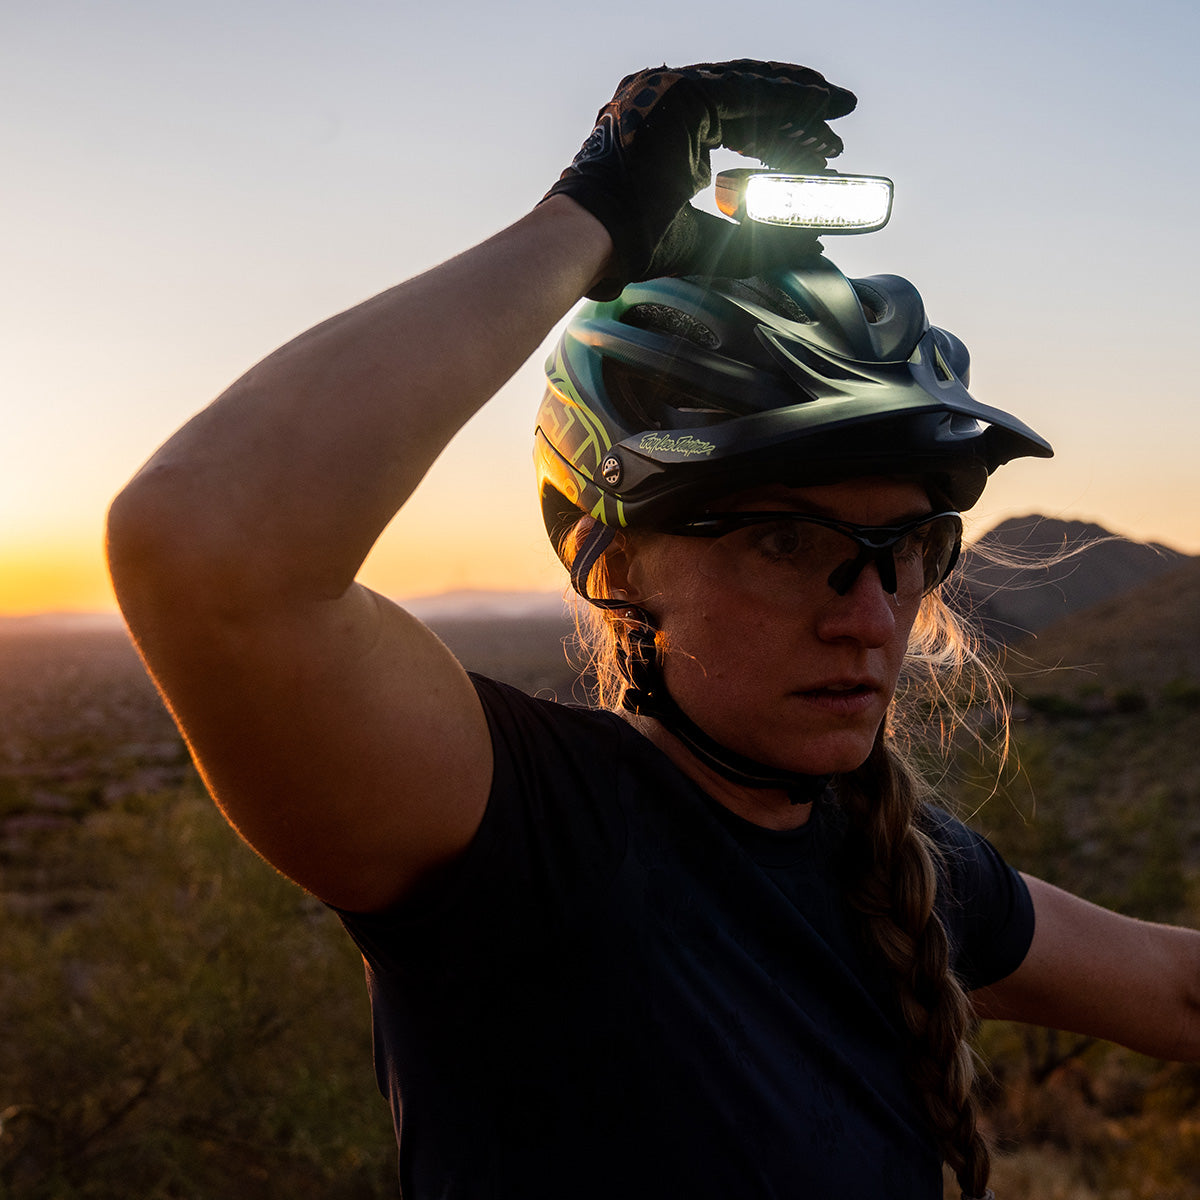 Hangover Bike Helmet Light